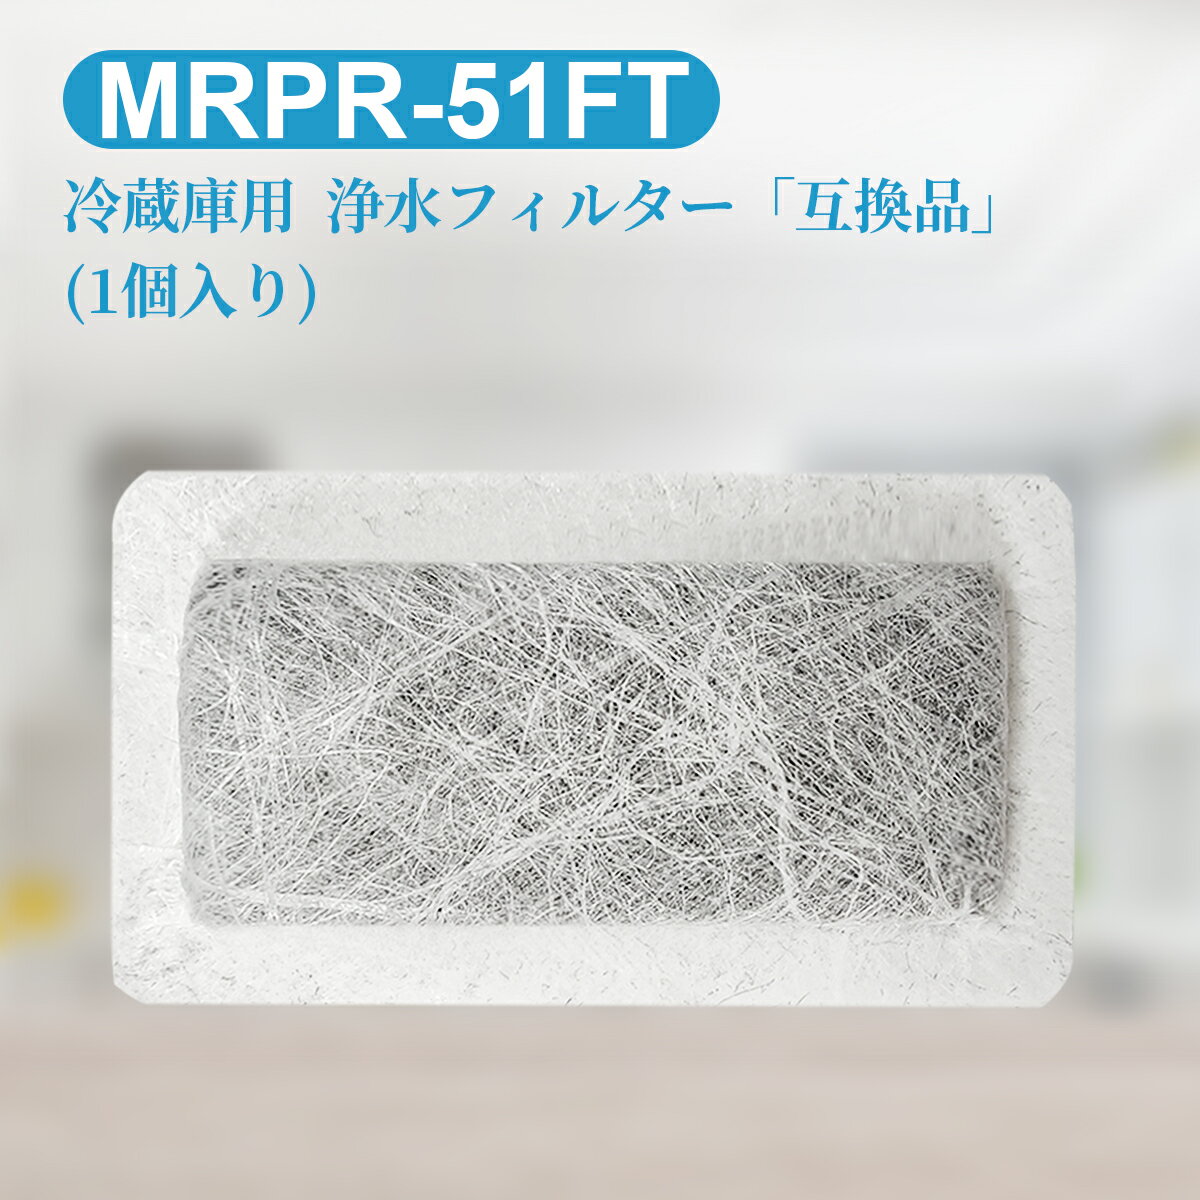 MRPR-51FT ¢ ưɹ ե륿 mrpr-51ft ɩ ¢ ɹե륿 (ߴ/1)